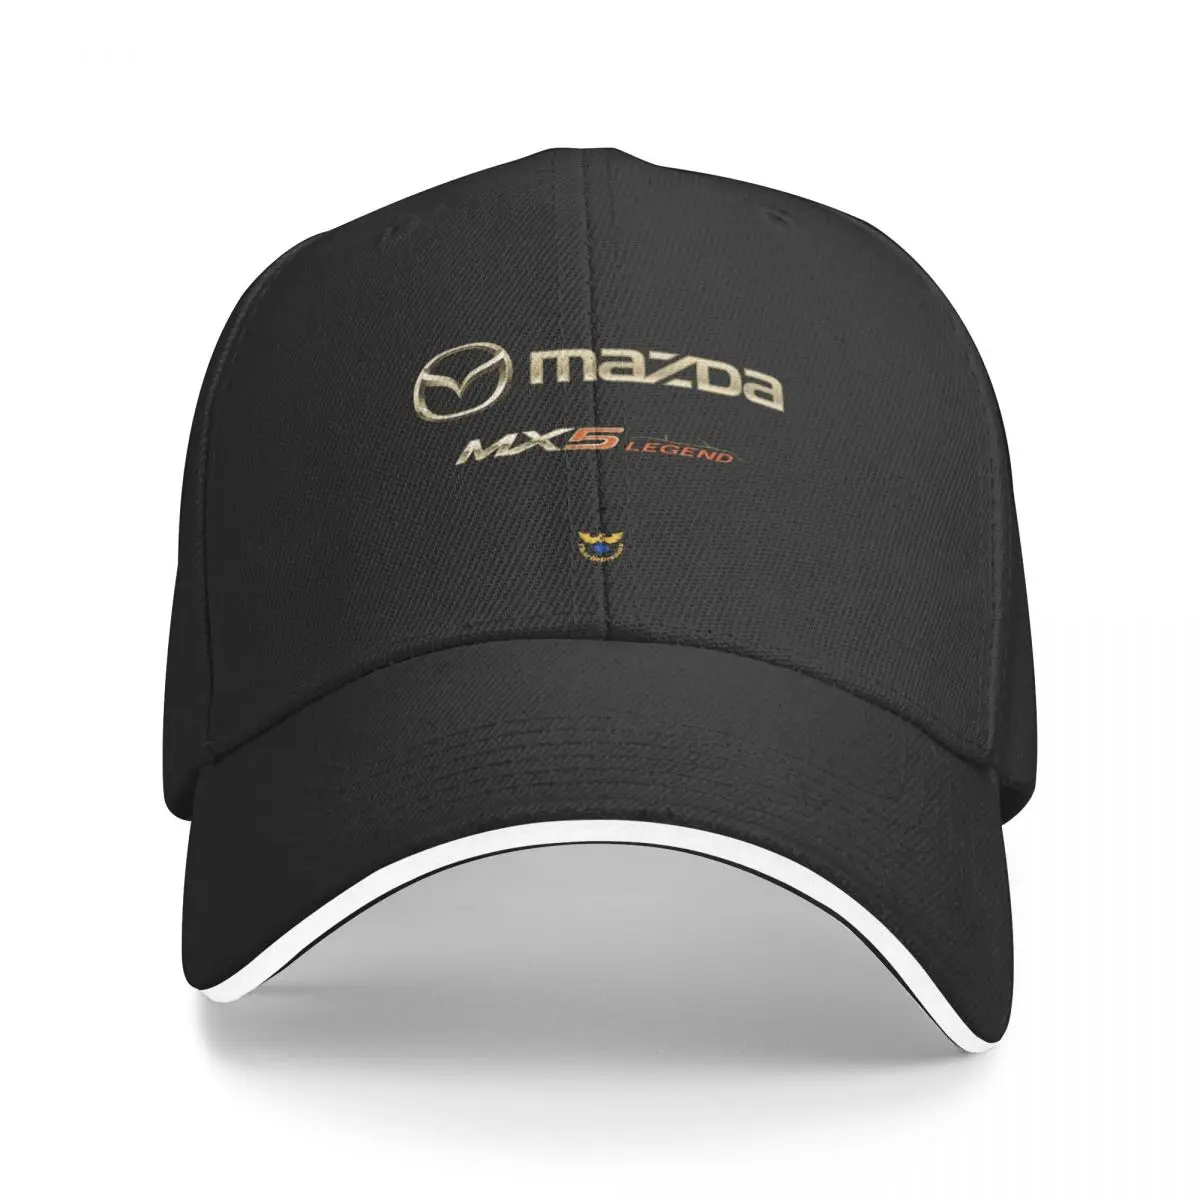 Бейсбольная кепка Mazda MX-5 с футболкой, роскошная кепка, черная забавная шляпа, одежда для гольфа, мужская и женская